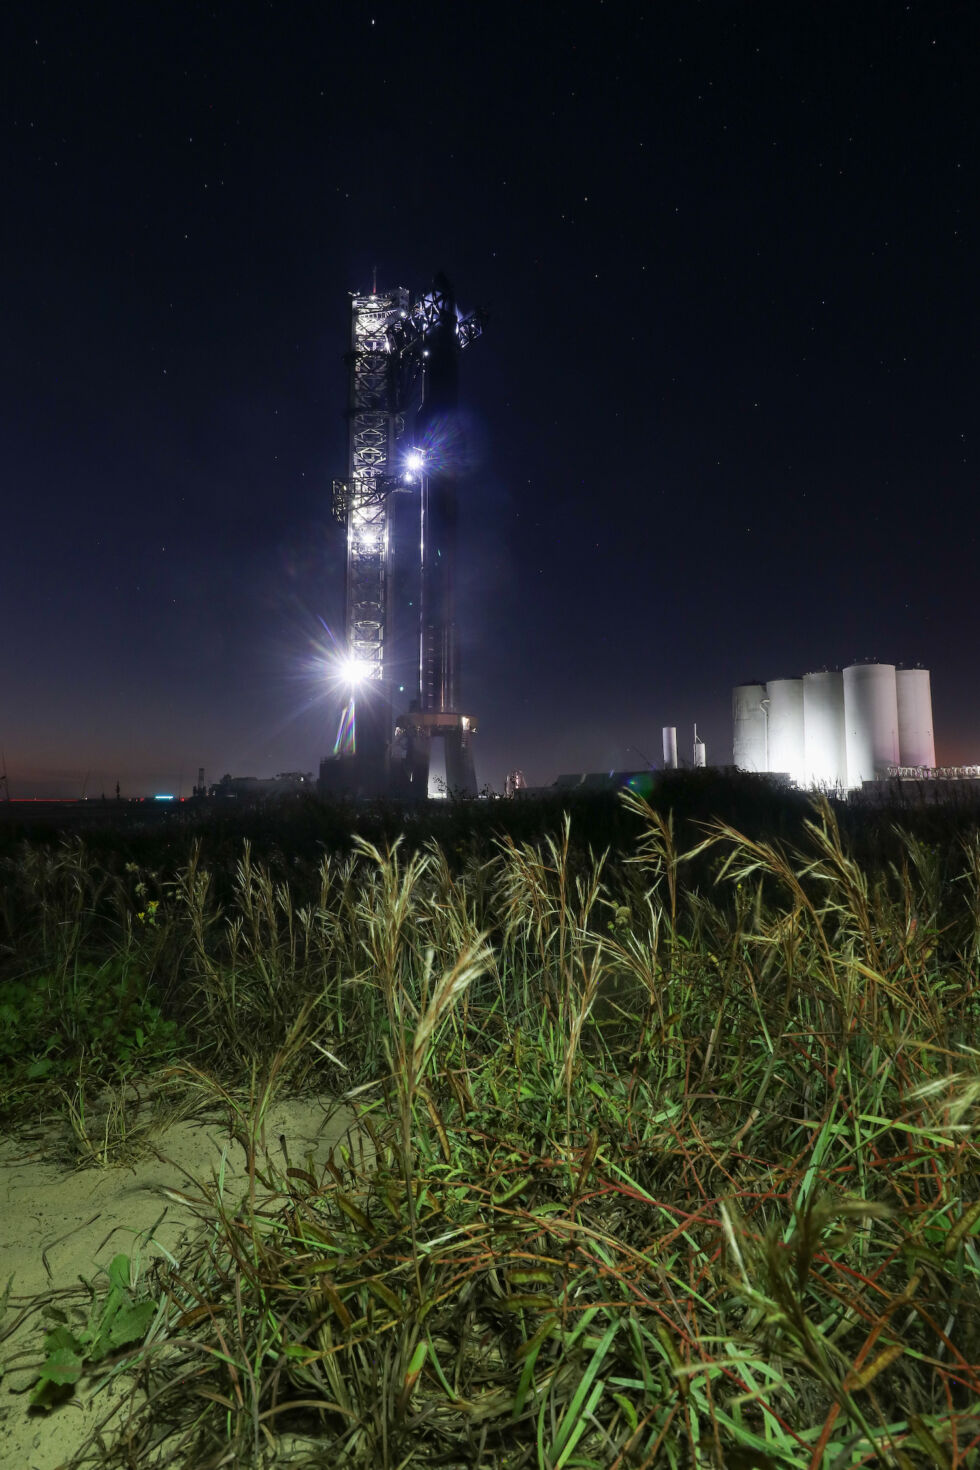 Стартовая площадка Starship компании SpaceX включает в себя опорную башню, приподнятую стартовую площадку и резервуарный парк для метана, жидкого кислорода и воды.